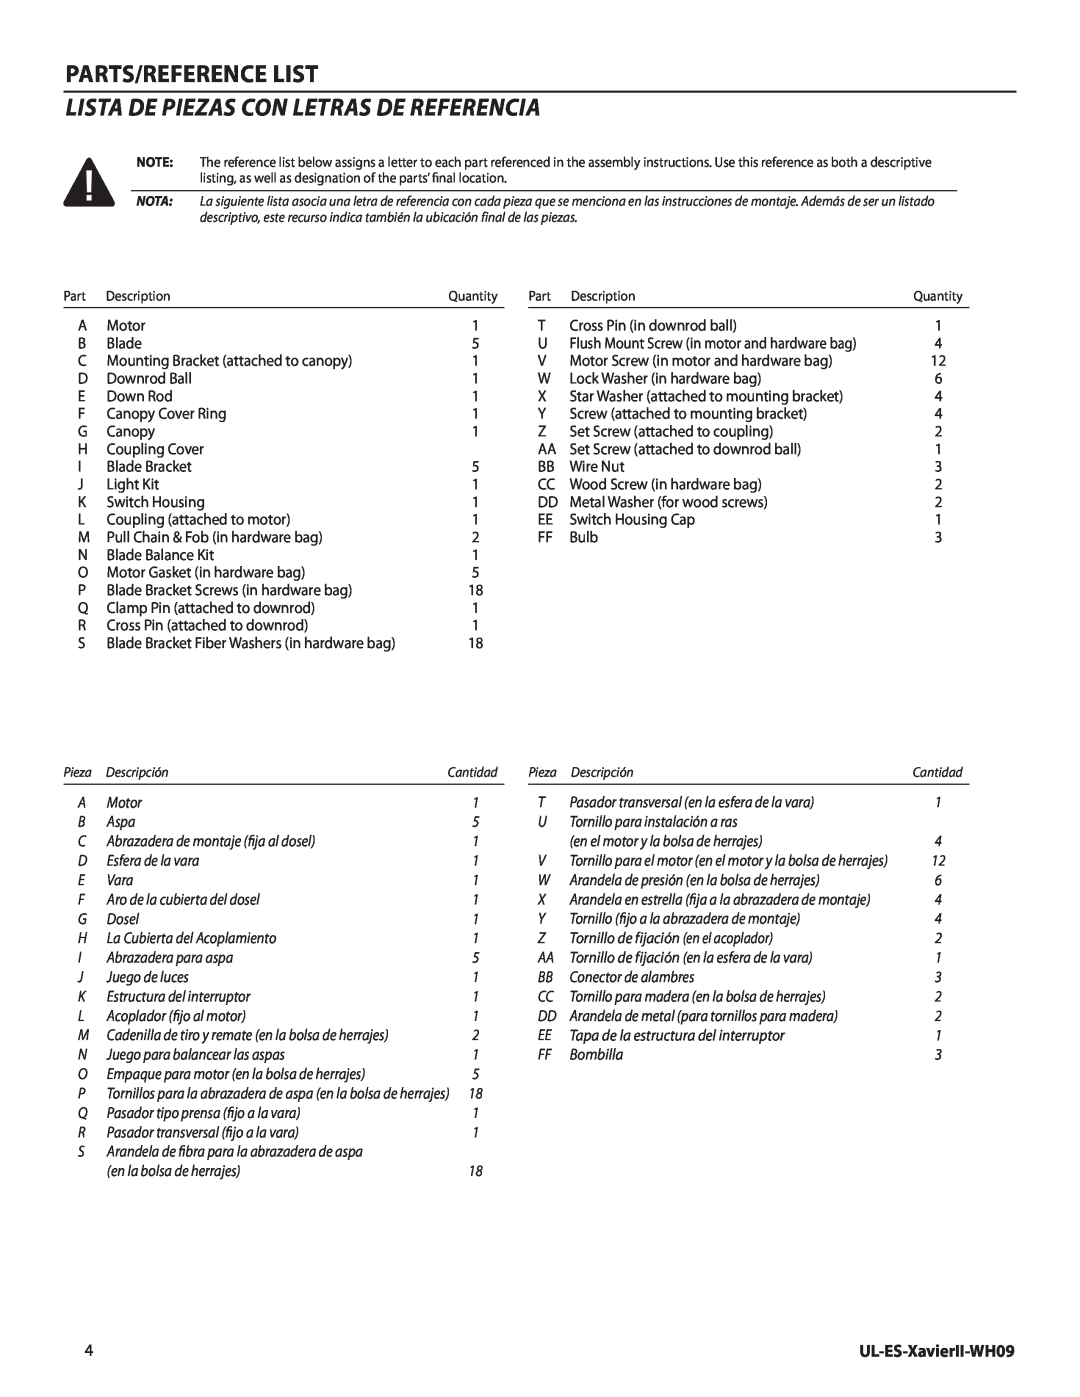 Westinghouse manual Parts/Reference List, Lista de piezas con letras de referencia, UL-ES-XavierII-WH09 